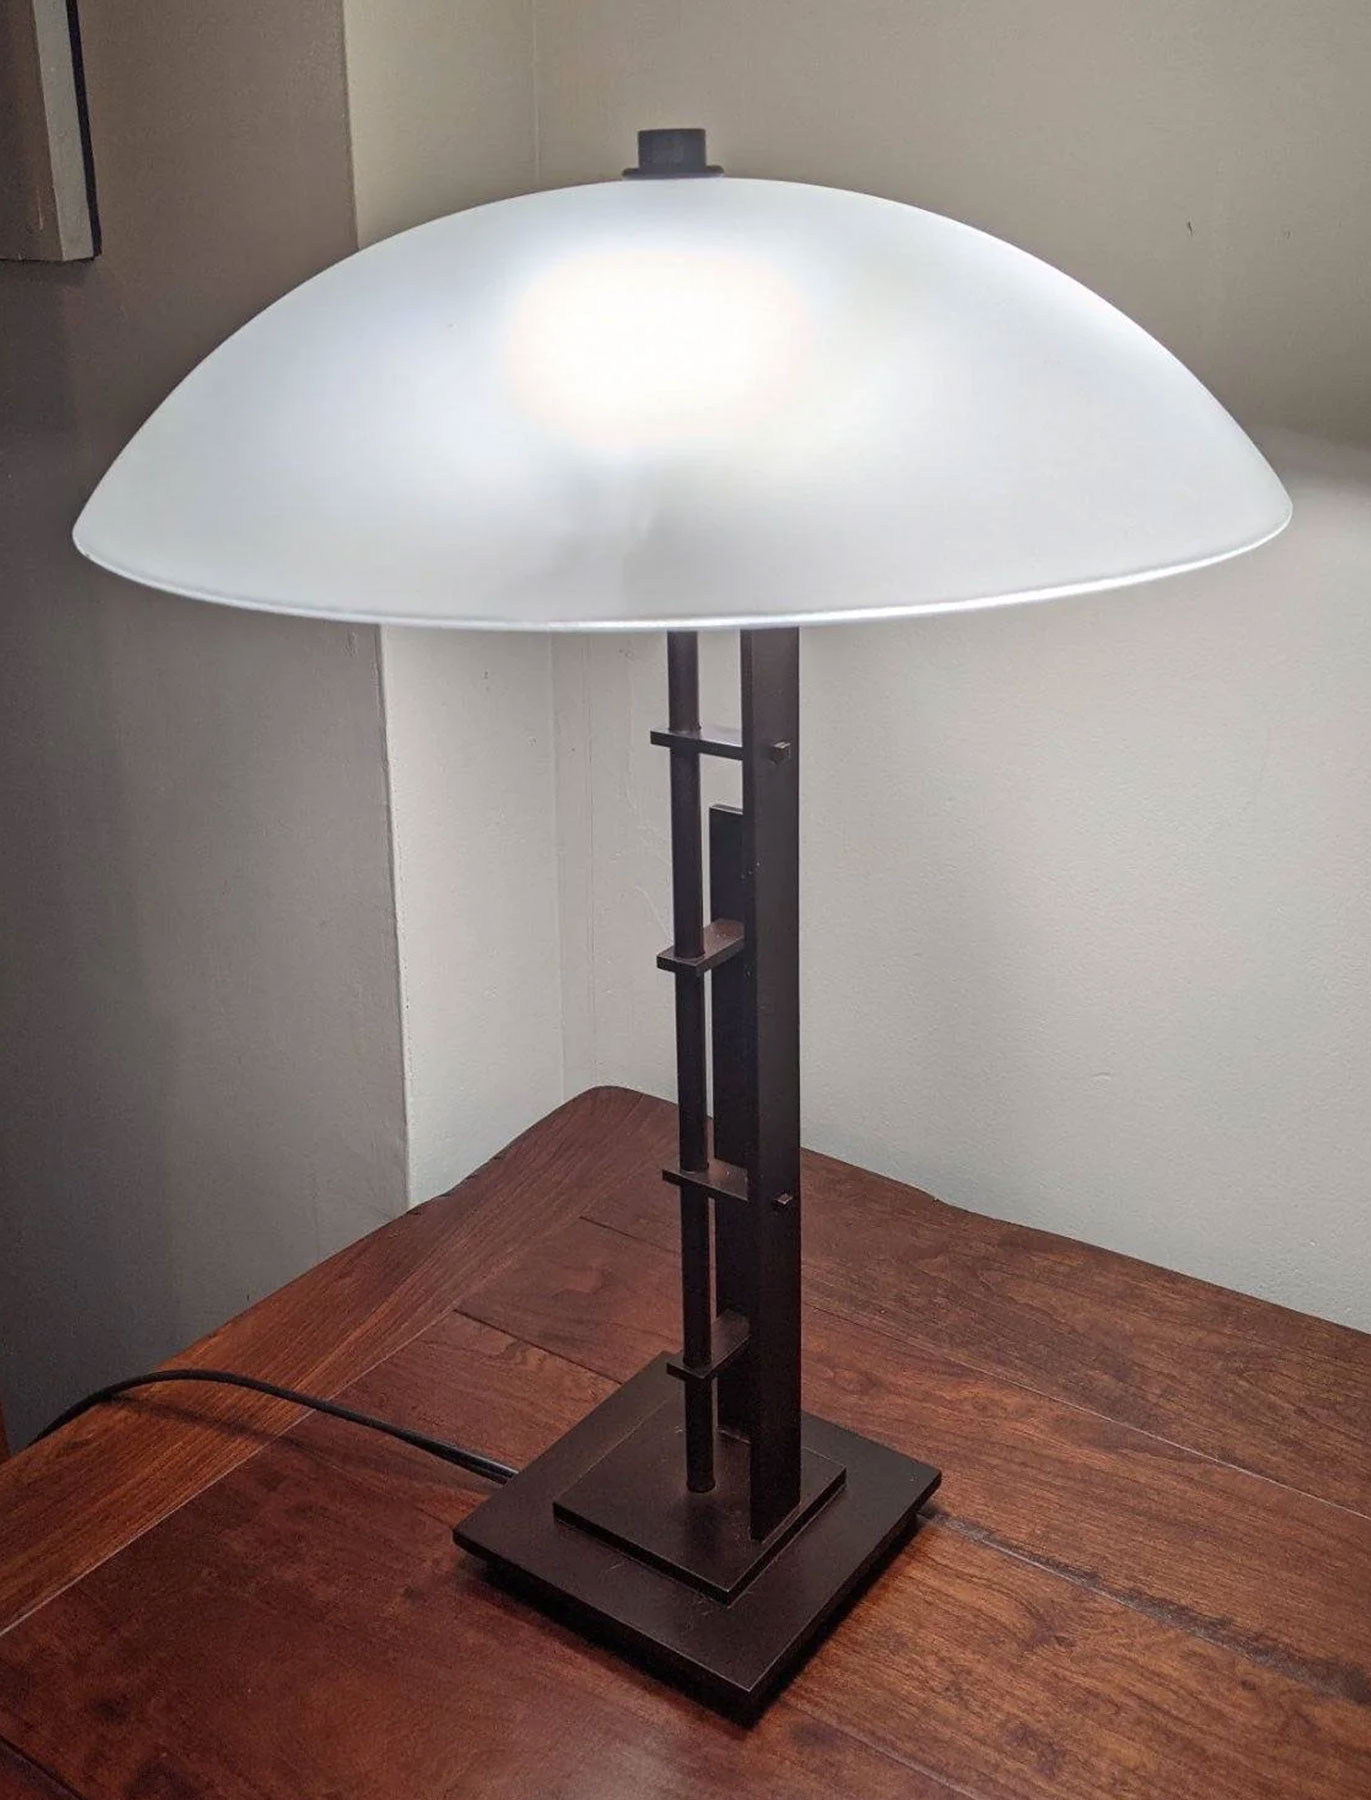 Hubbardton Forge Metra Double Table Lamp in Mahogany Finish